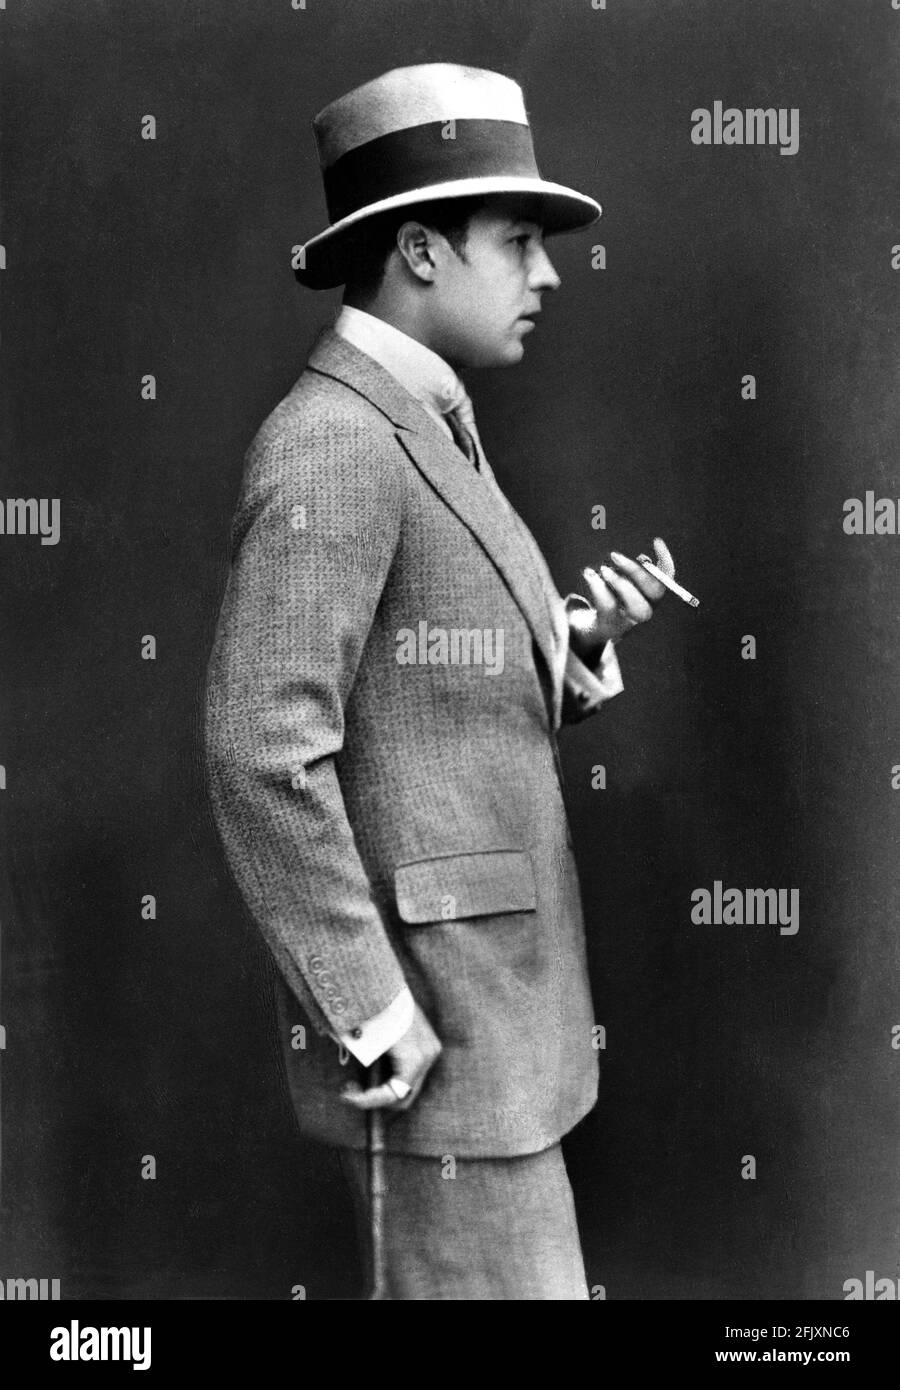 1924 ca., USA : der Stummfilmschauspieler RUDOLPH VALENTINO ( geb. Rodolfo Guglielmi ,1895 - 1926 ) pubblicary still . - KINO MUTO - RODOLFO VALENTINO - Attore cinematografico - LATIN LOVER - italoamericano - italo americano - italo-americano - Emigrant - emigrante - italo-amerikanisch - Portrait - ritratto - tie - cravatta - hat - cappello - Bastone da passeggio - Stock - profilo - Profile - celebrità personalità attori che fumano - fumatore - fumo - sigaretta - Zigarette - Berühmtheit - Persönlichkeit Prominente Persönlichkeiten Schauspieler Raucher - Raucher - fumatore ---- Archivio GBB Stockfoto